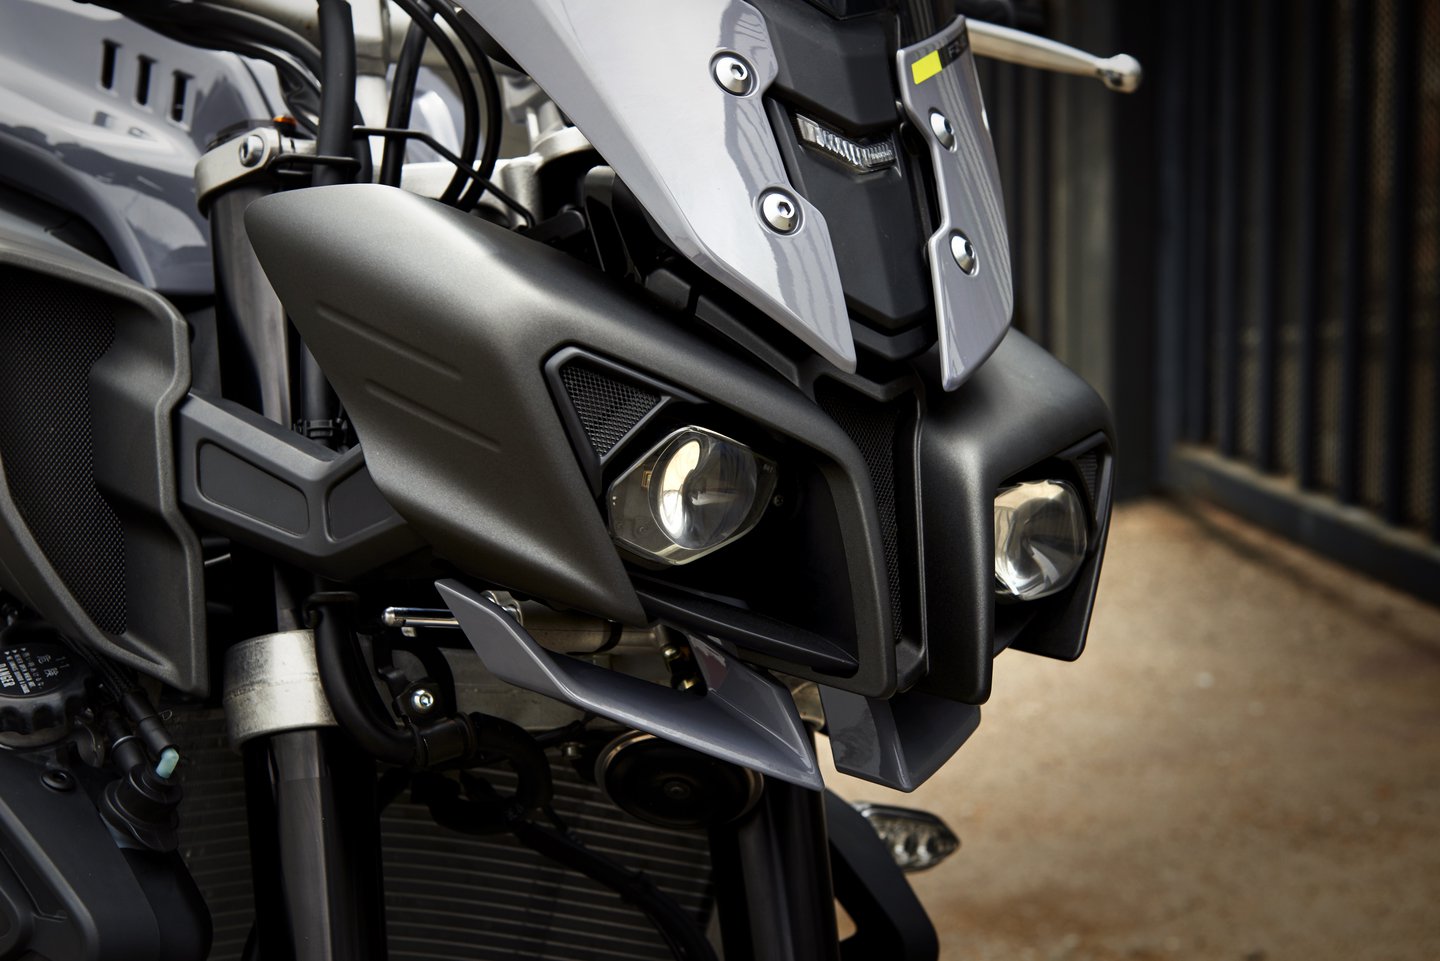 
Điểm gây tranh cãi duy nhất trên Yamaha FZ-10 2017 chính là thiết kế. Một số biker lớn tuổi có thể cảm thấy Yamaha FZ-10 2017 trông như xe bước ra từ phim Transformers. Trong khi đó, các biker trẻ tuổi lại đánh giá cao Yamaha FZ-10 2017 về mặt công nghệ và thiết kế hiện đại.
